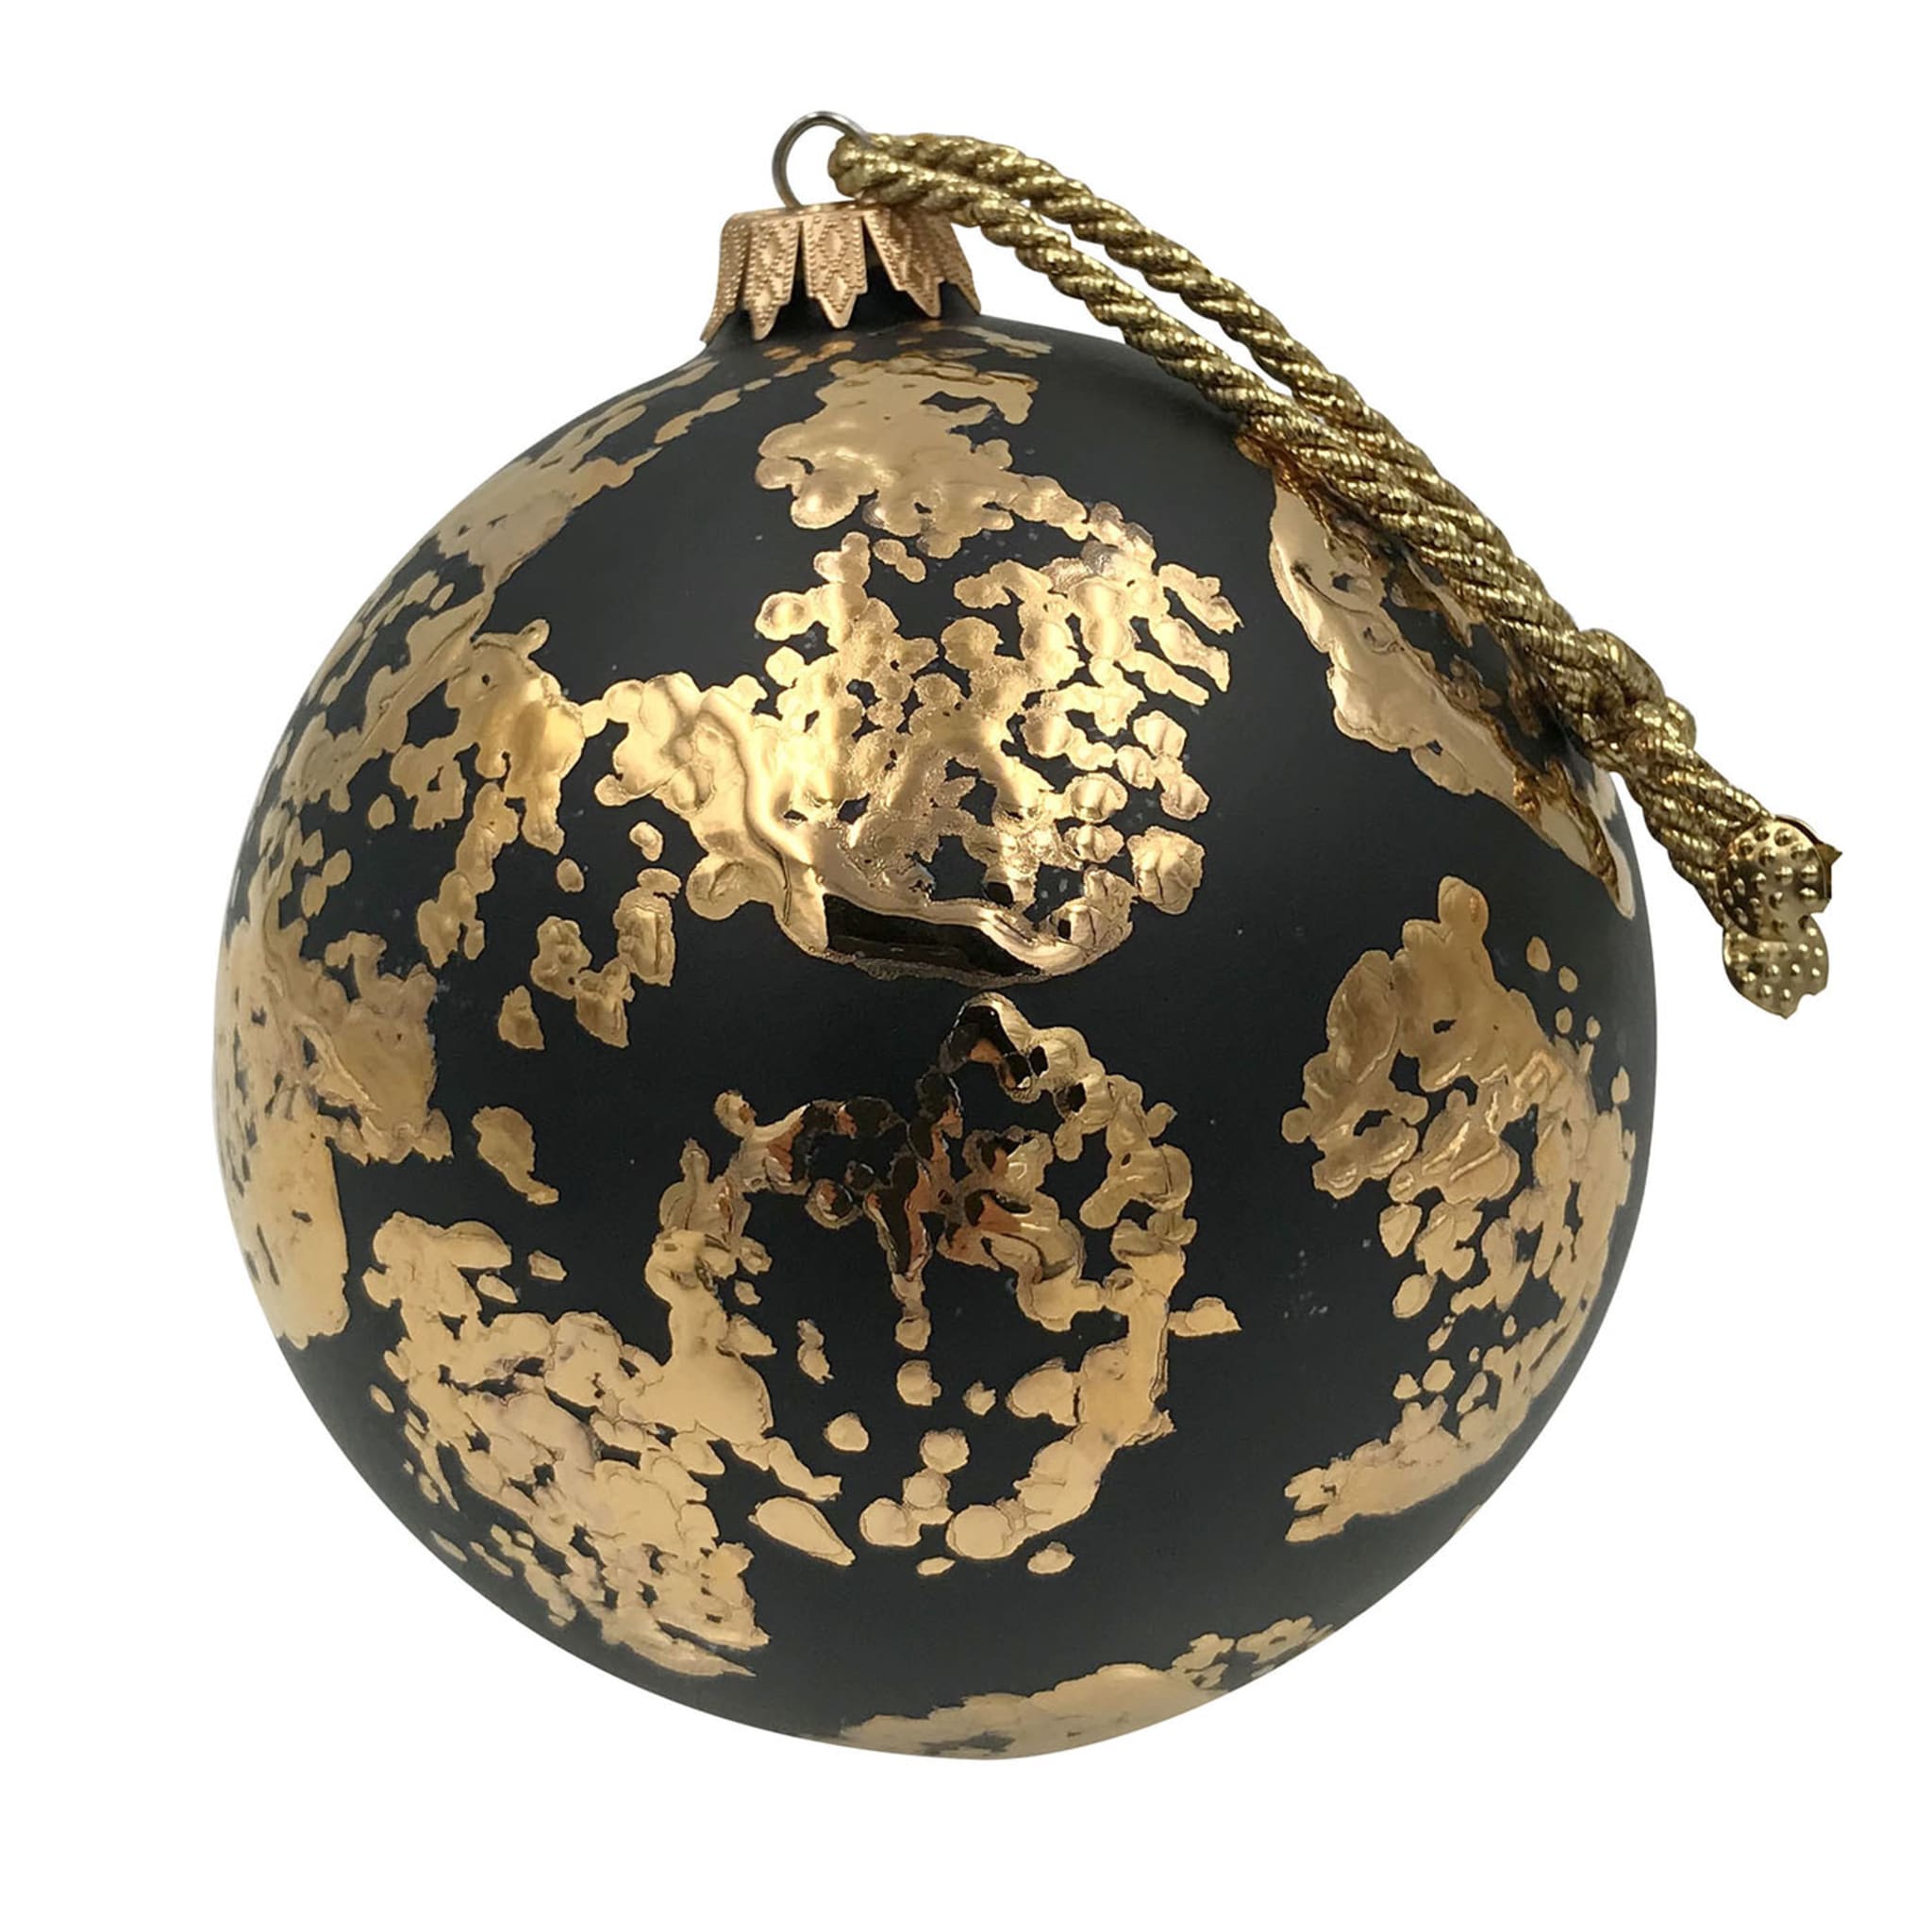 Adorno navideño de cerámica Foglie negro y dorado - Vista principal